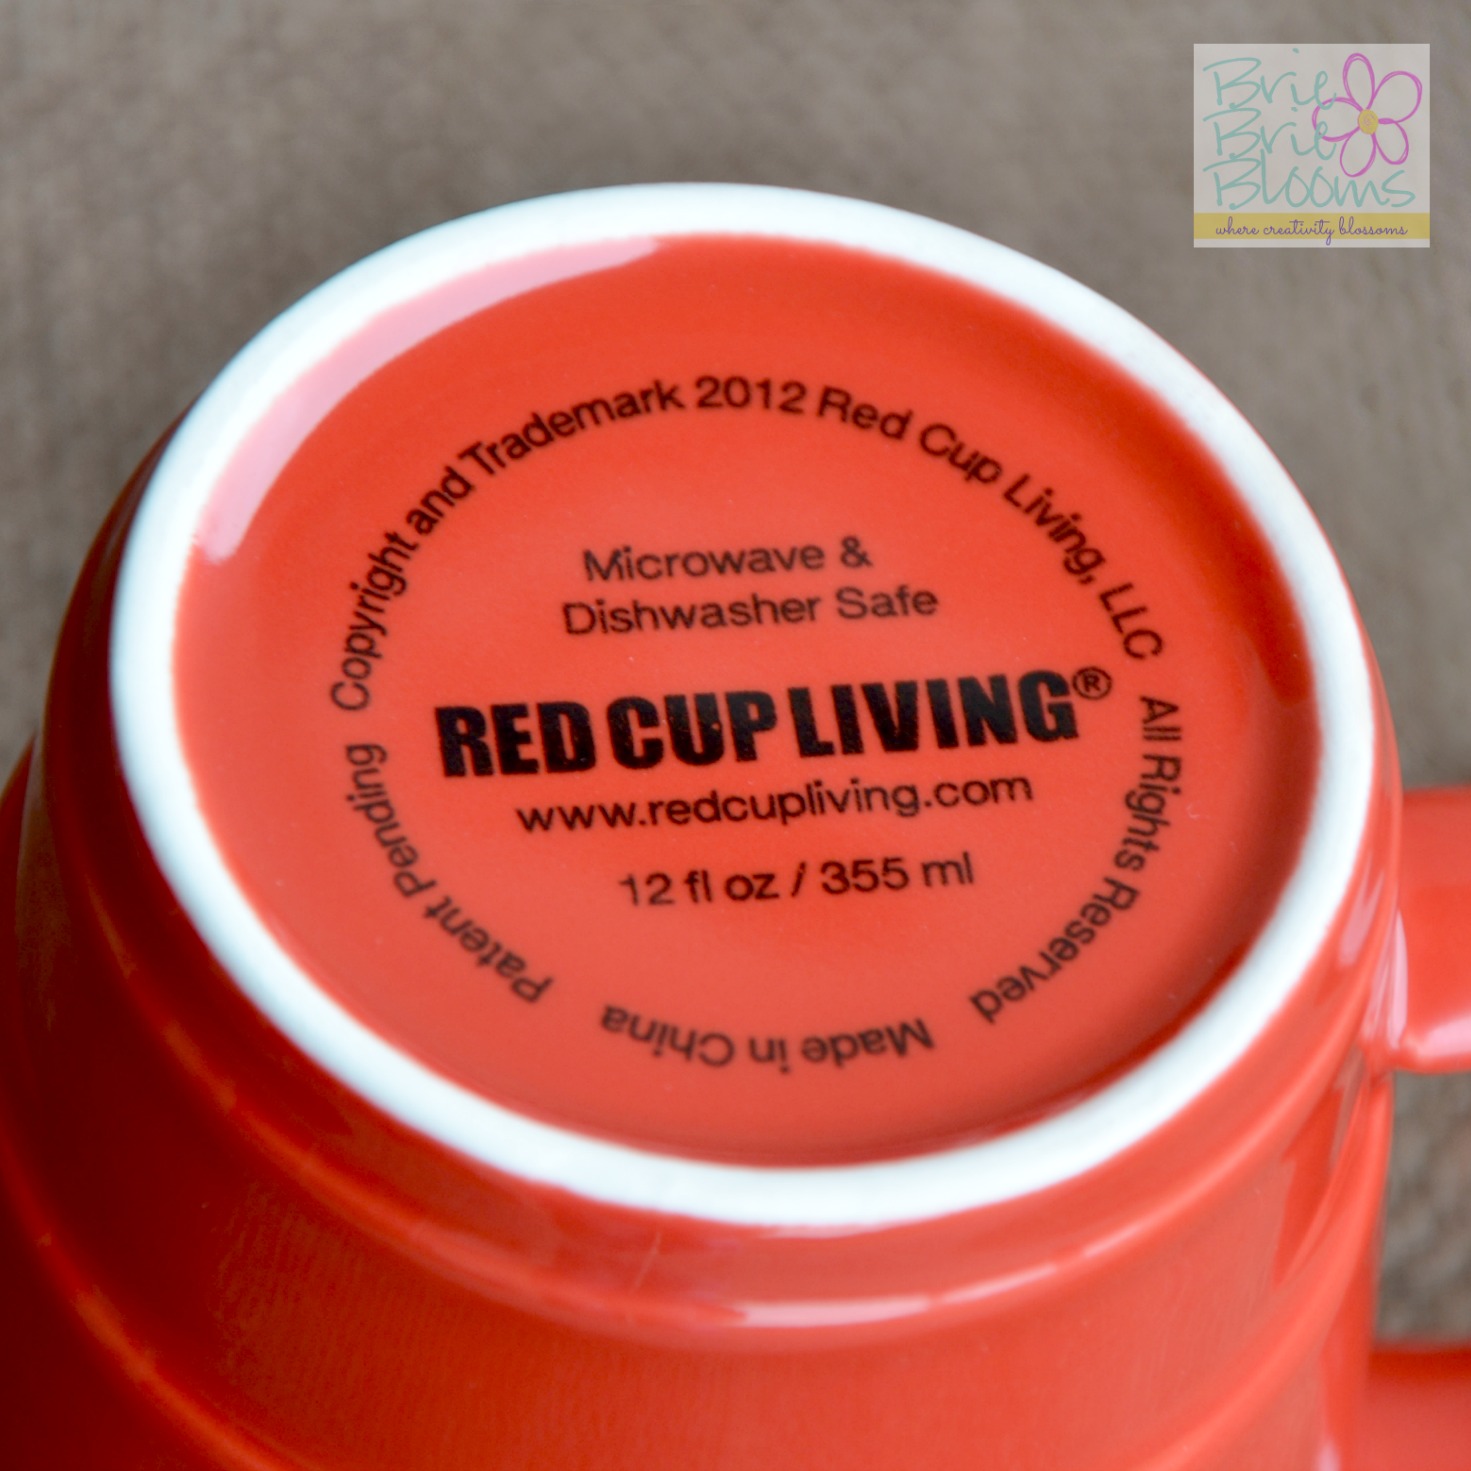 Red Cup Living mug is dishwasher safe